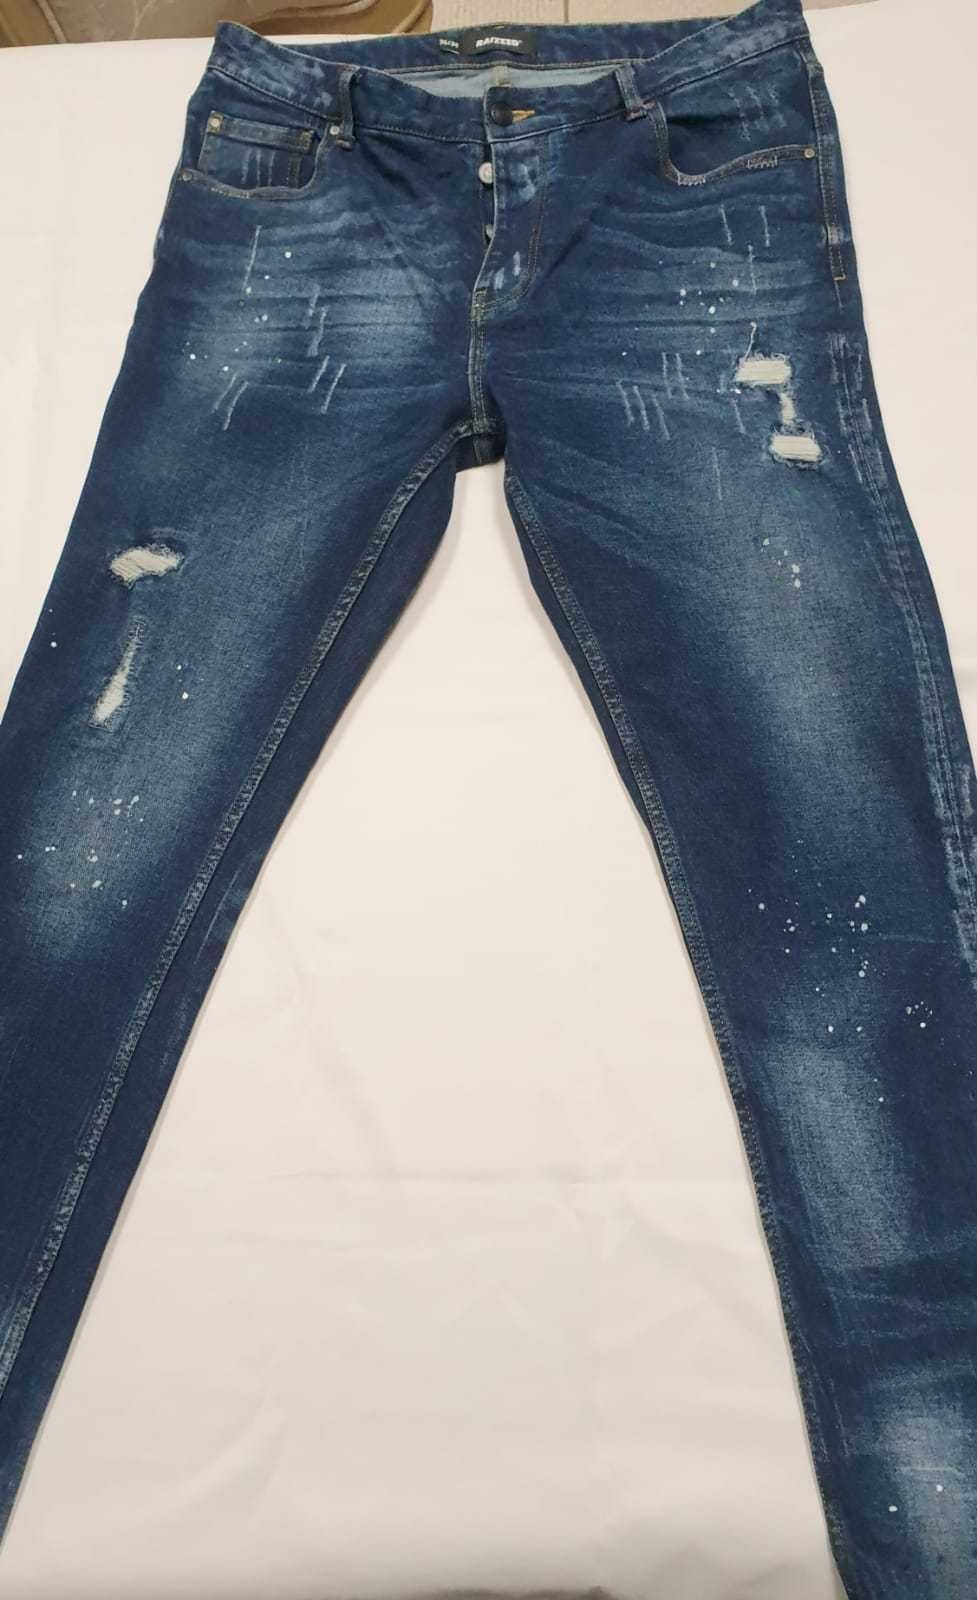 Spodnie męskie Jeans Raizzed 36/34 nowe